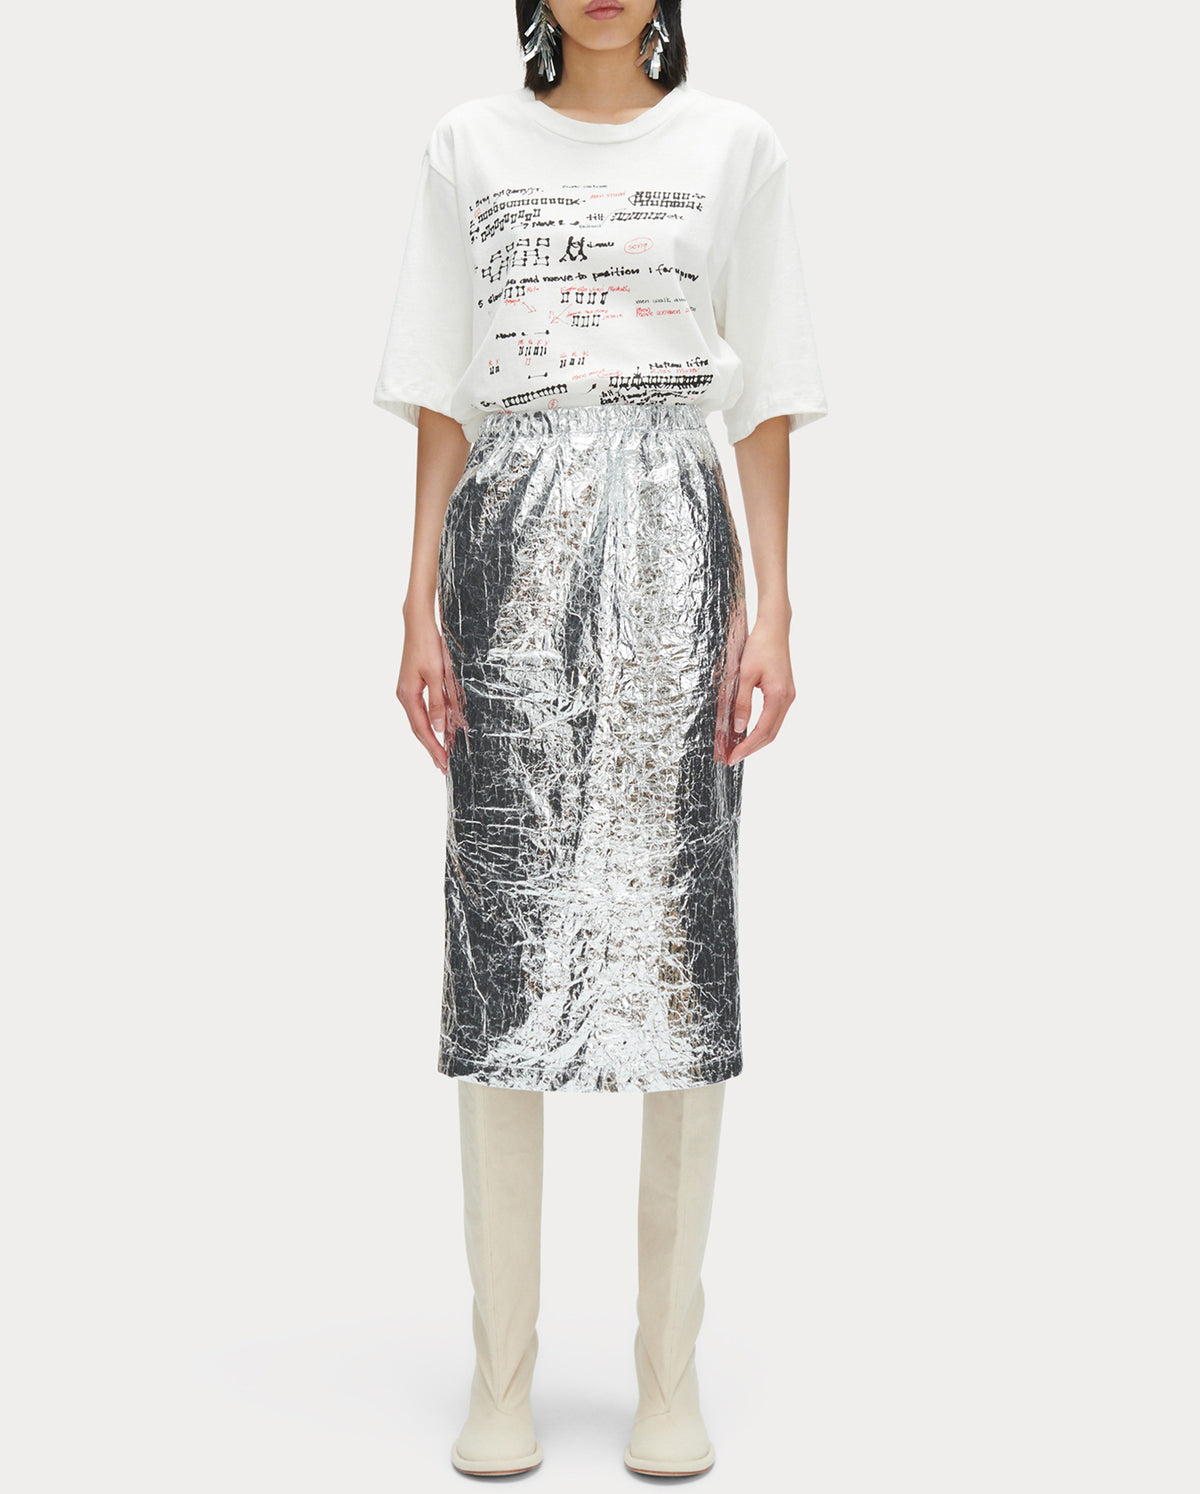 Mott Skirt - Silver